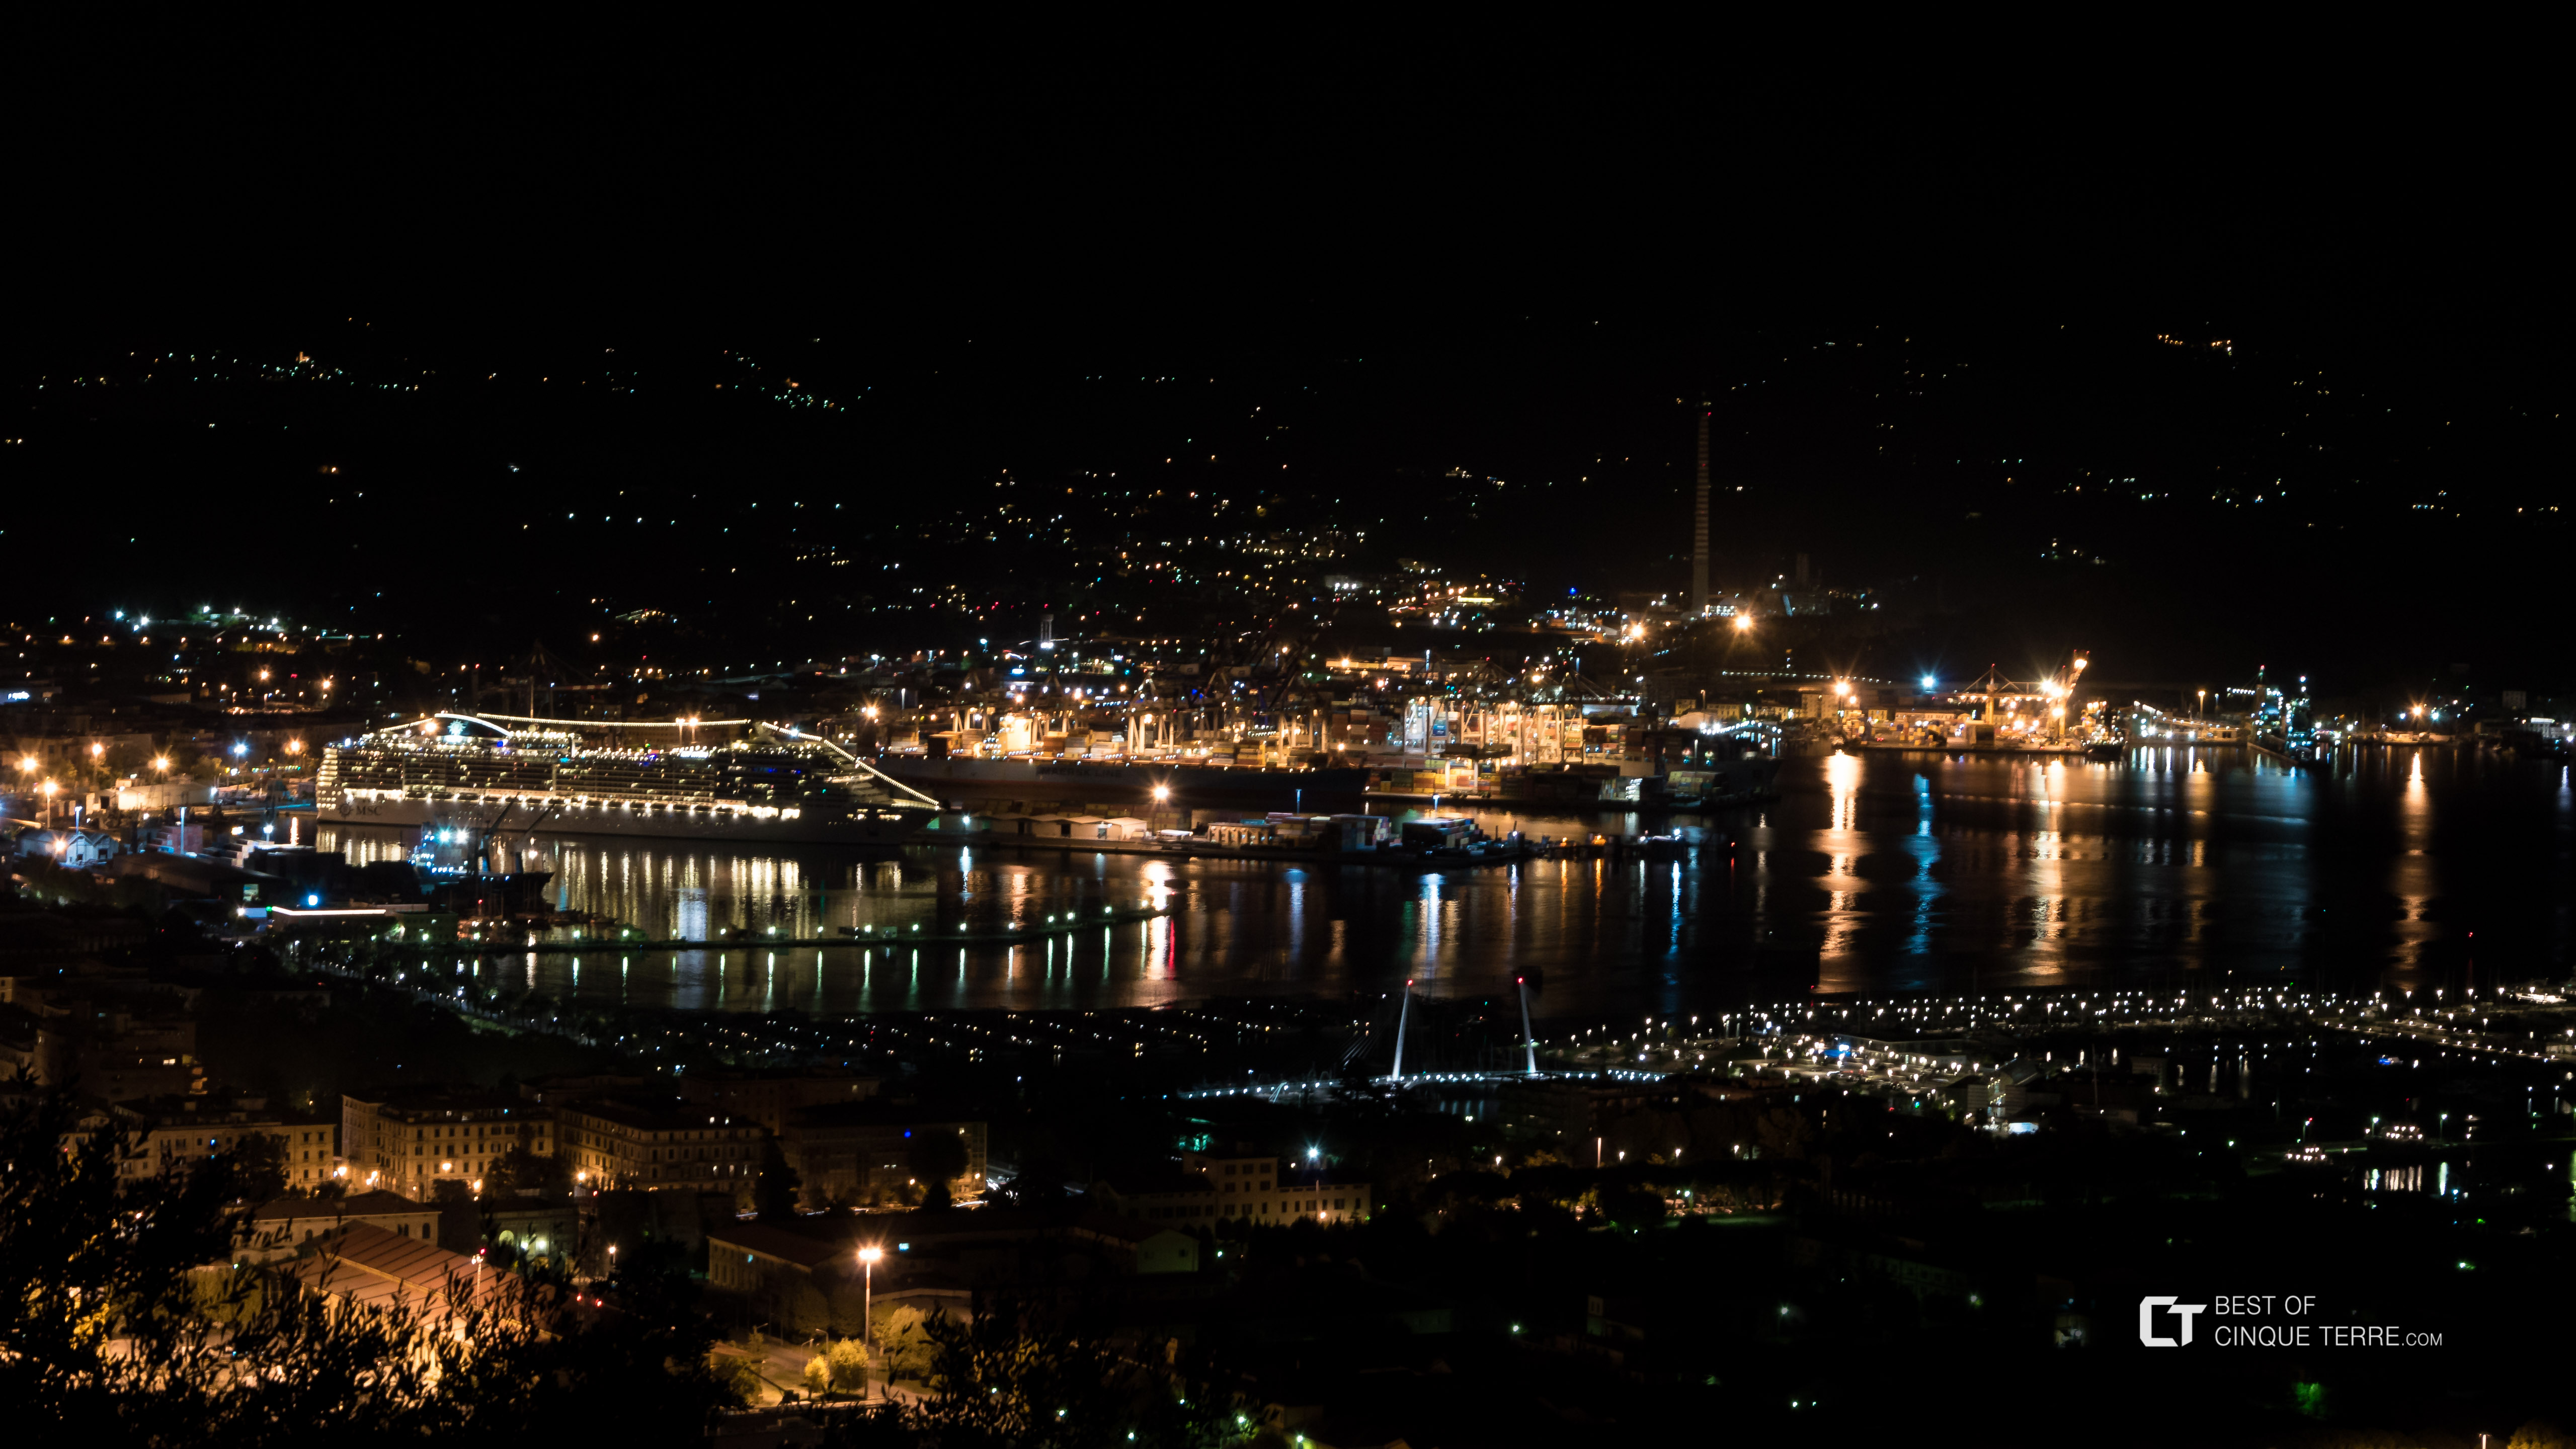 View at evening from the road to Riomaggiore, La Spezia, Italy